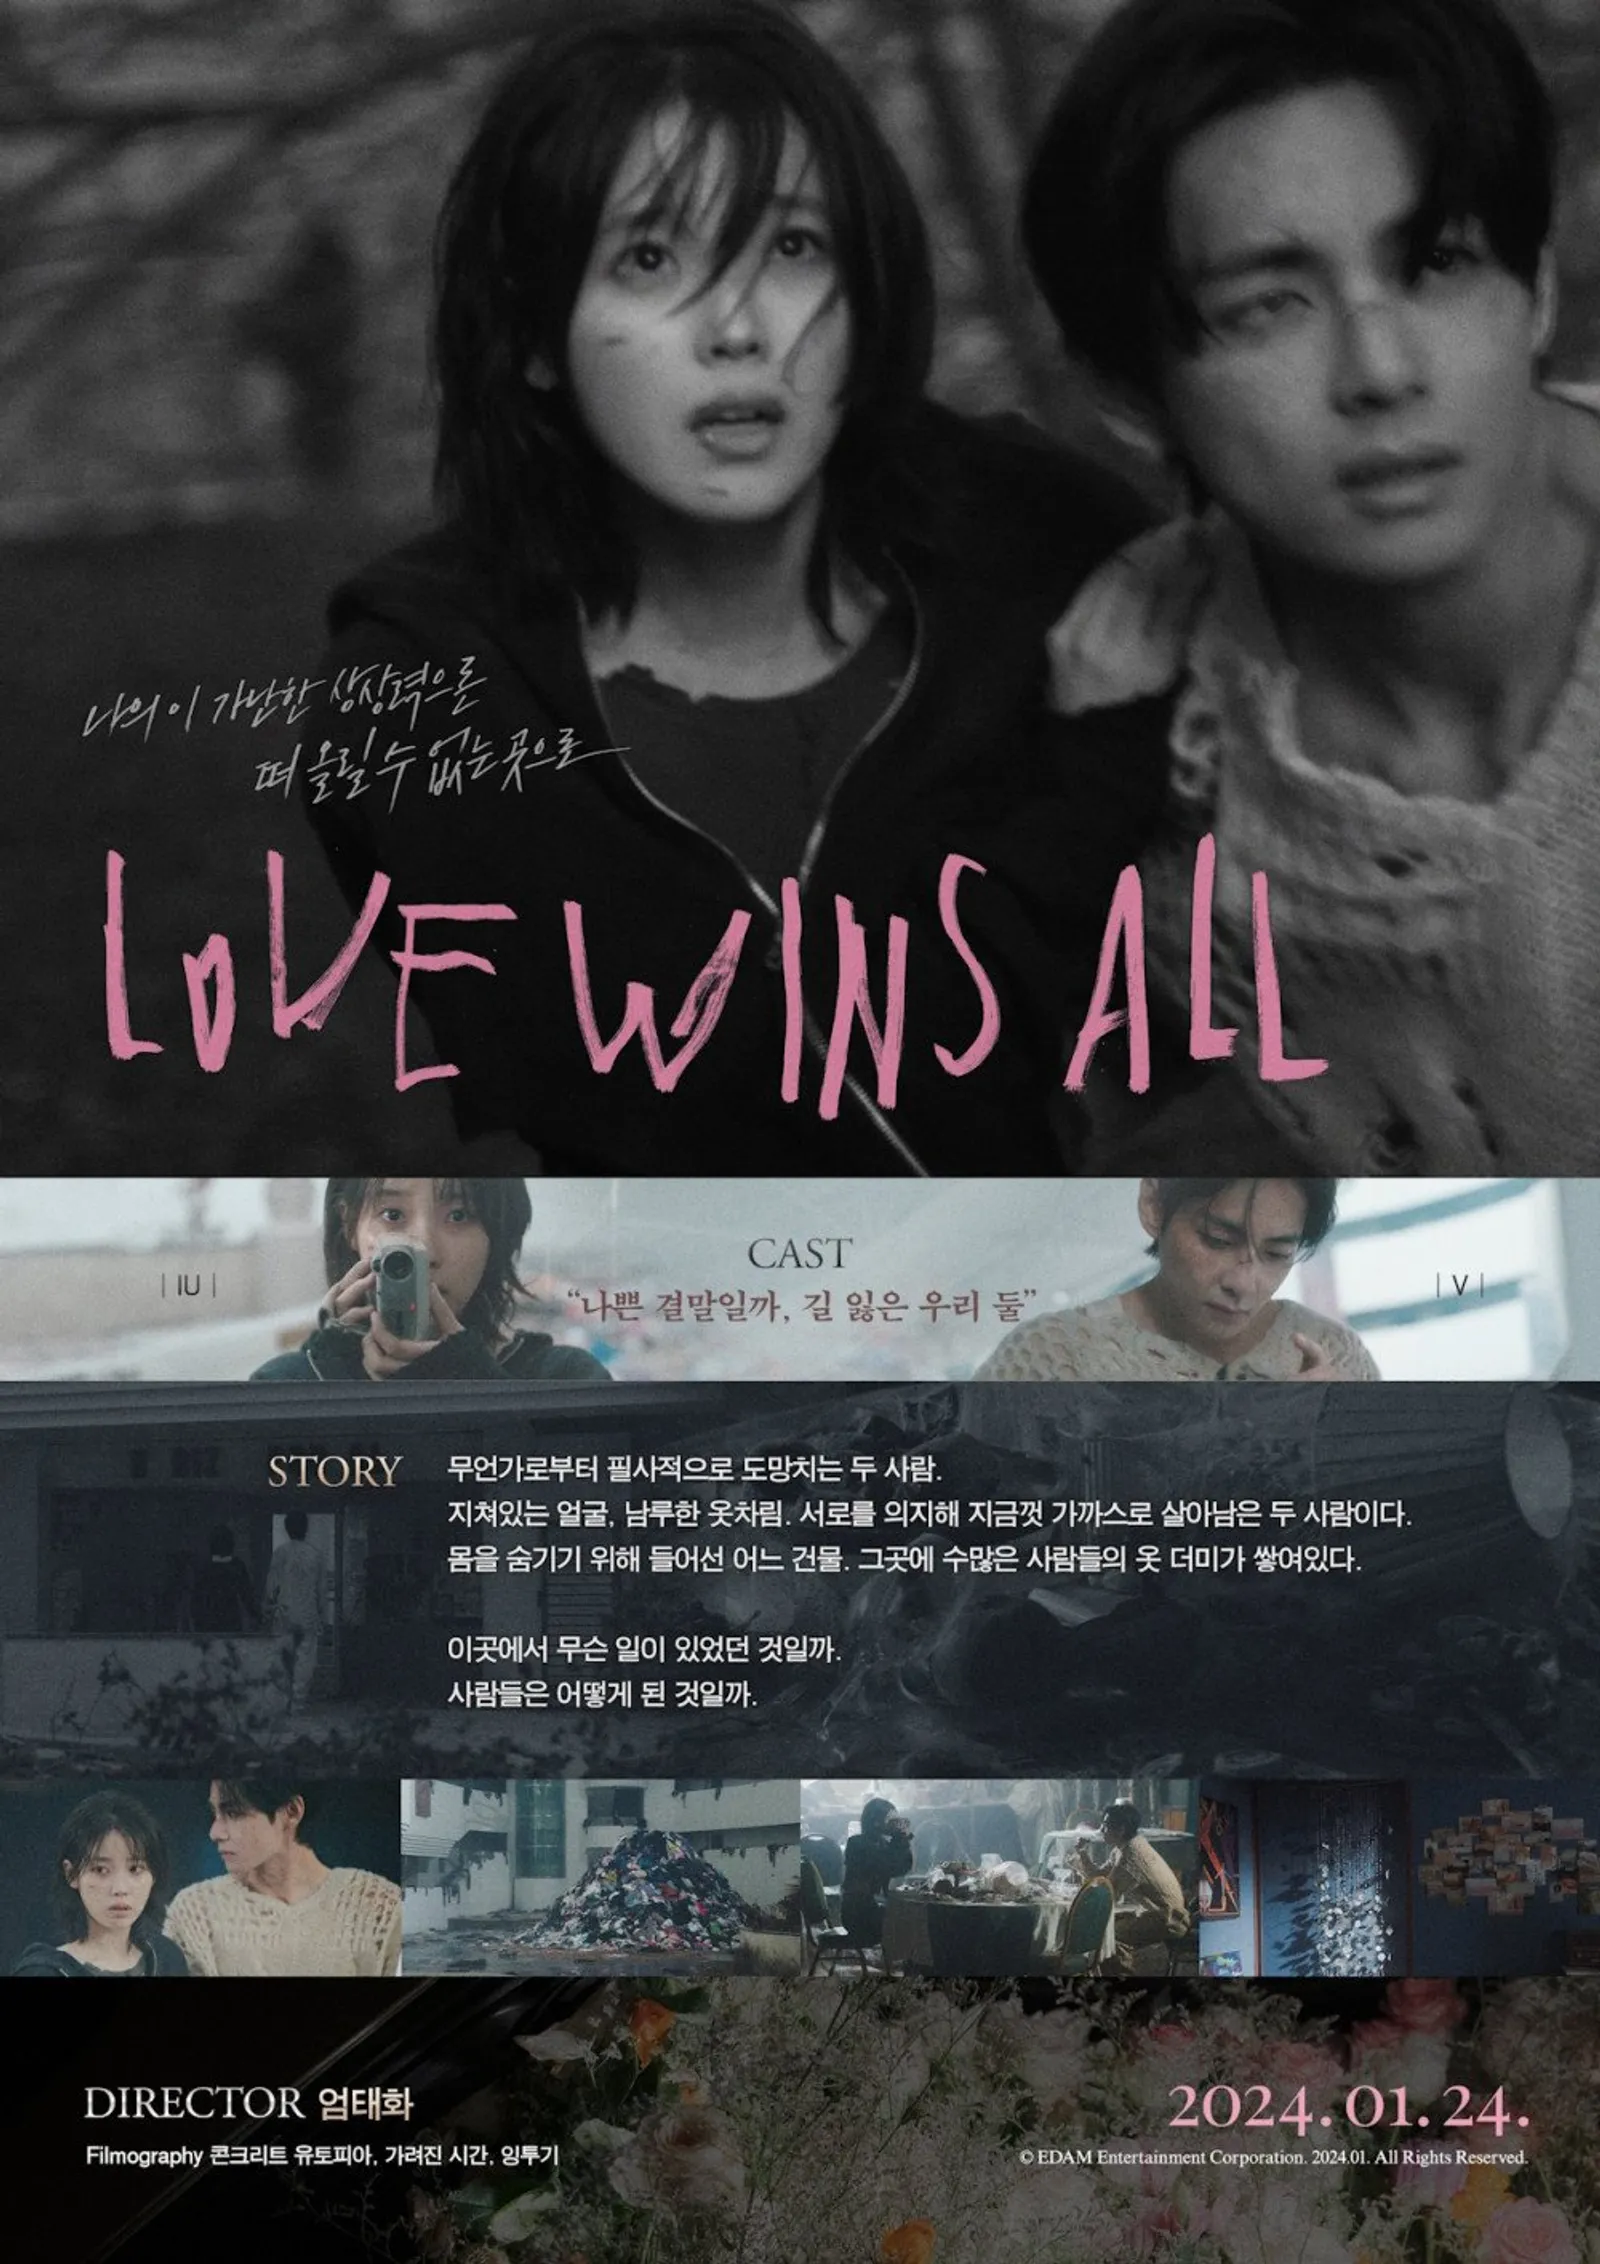 "Love Wins All" Rilis Sampler, Comeback IU Gaet V 'BTS' sebagai Model